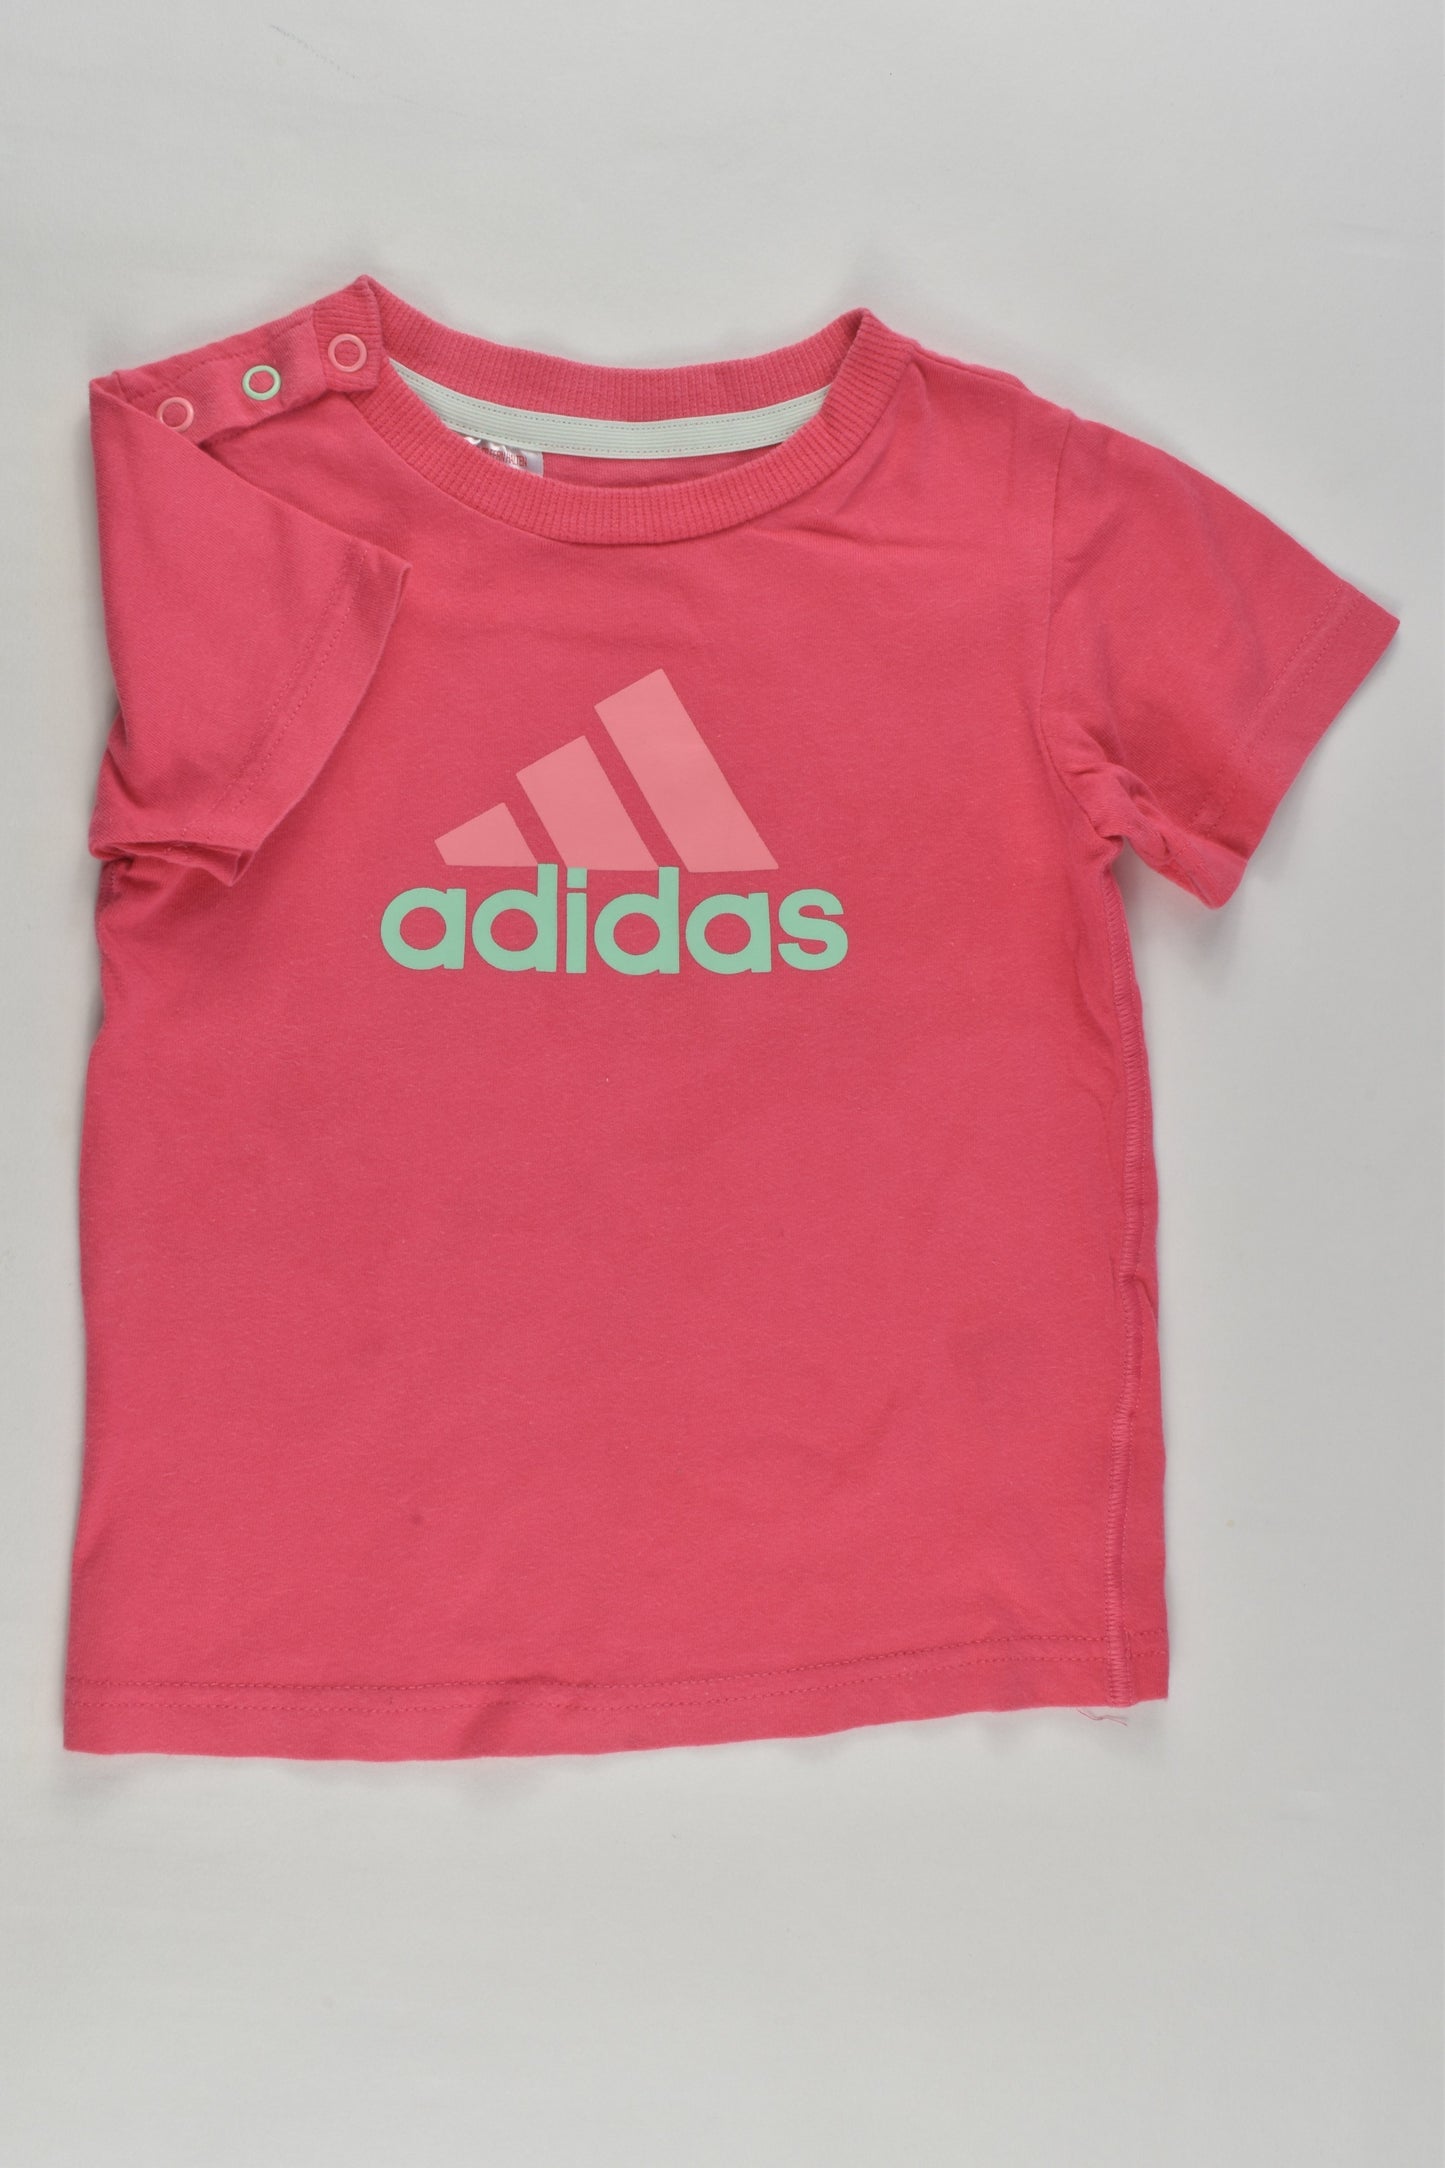 Adidas Size 0 (9-12 months) T-shirt